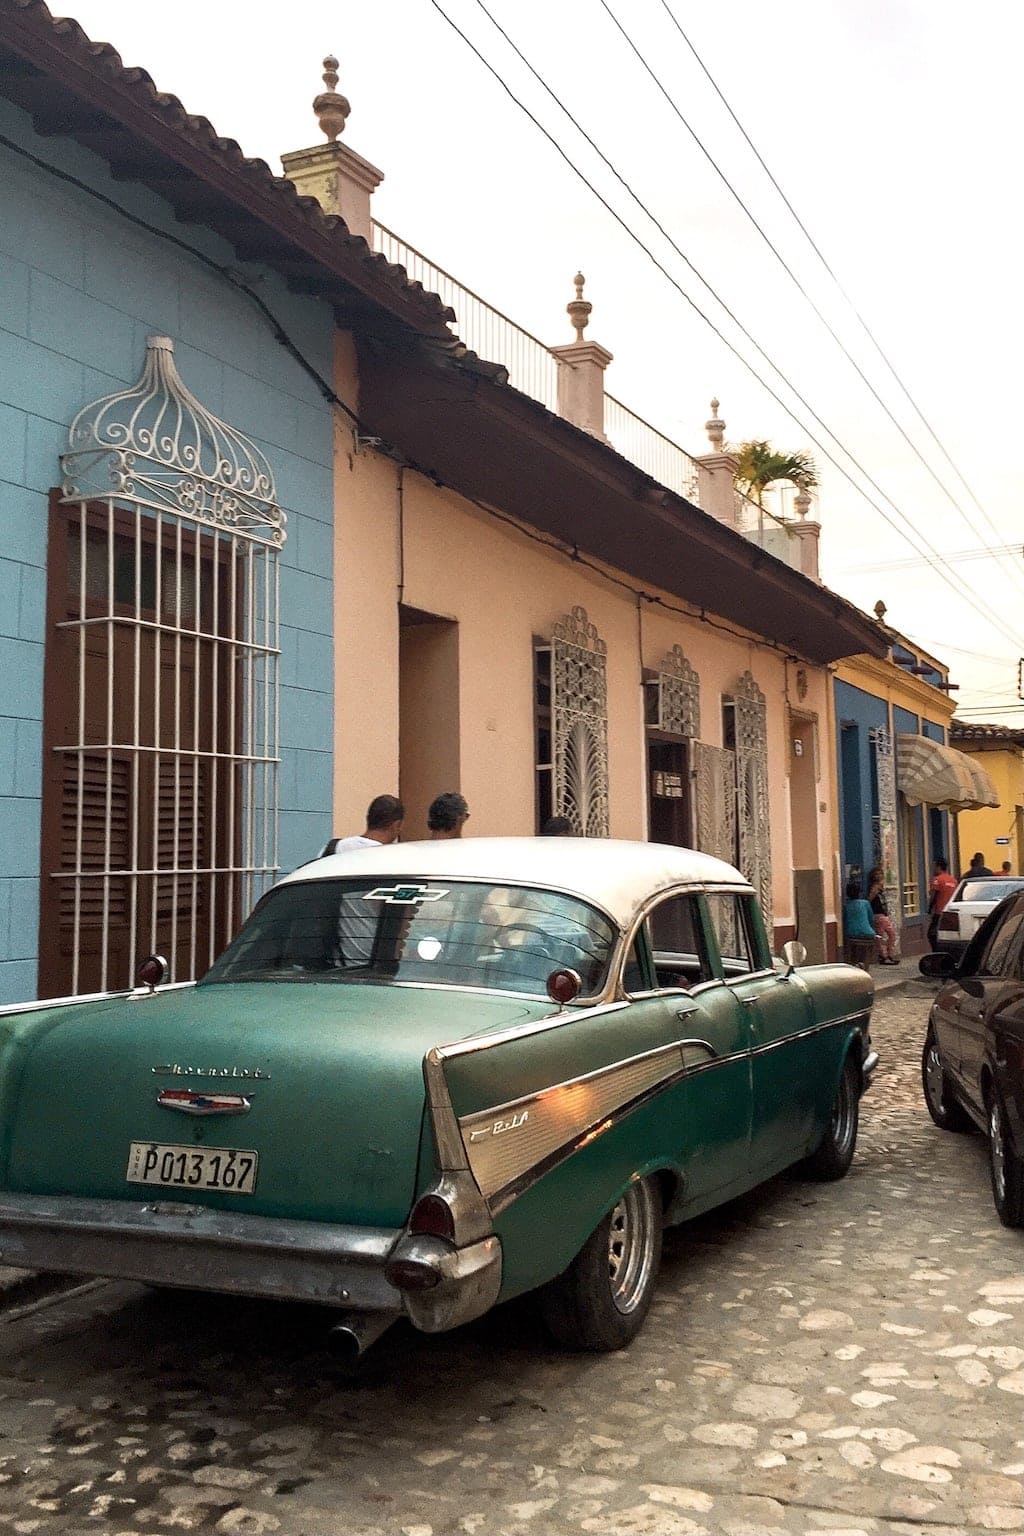 Colonial town of Trinidad, Cuba